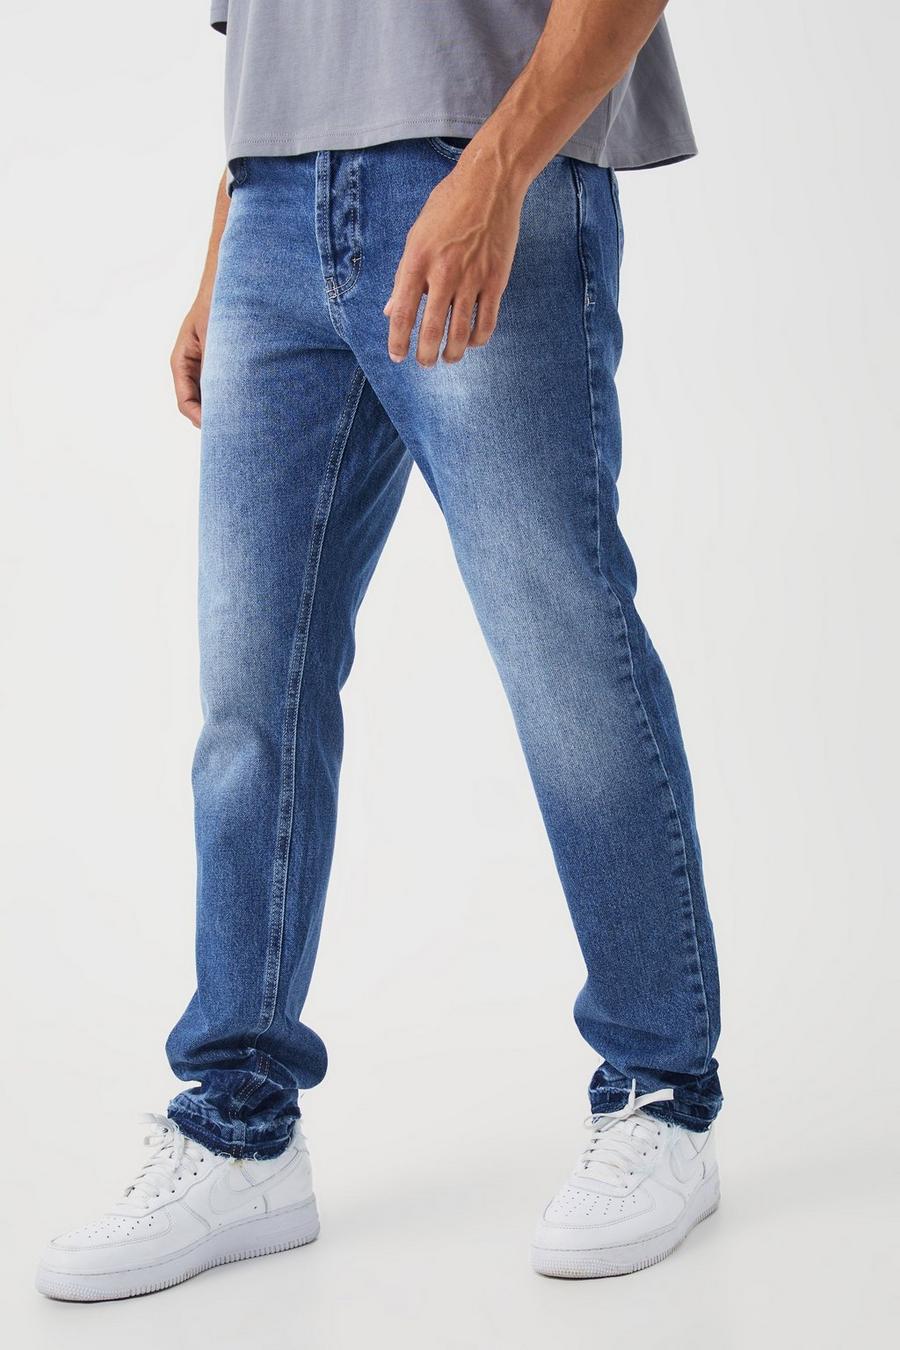 Gerade Jeans, Mid blue bleu